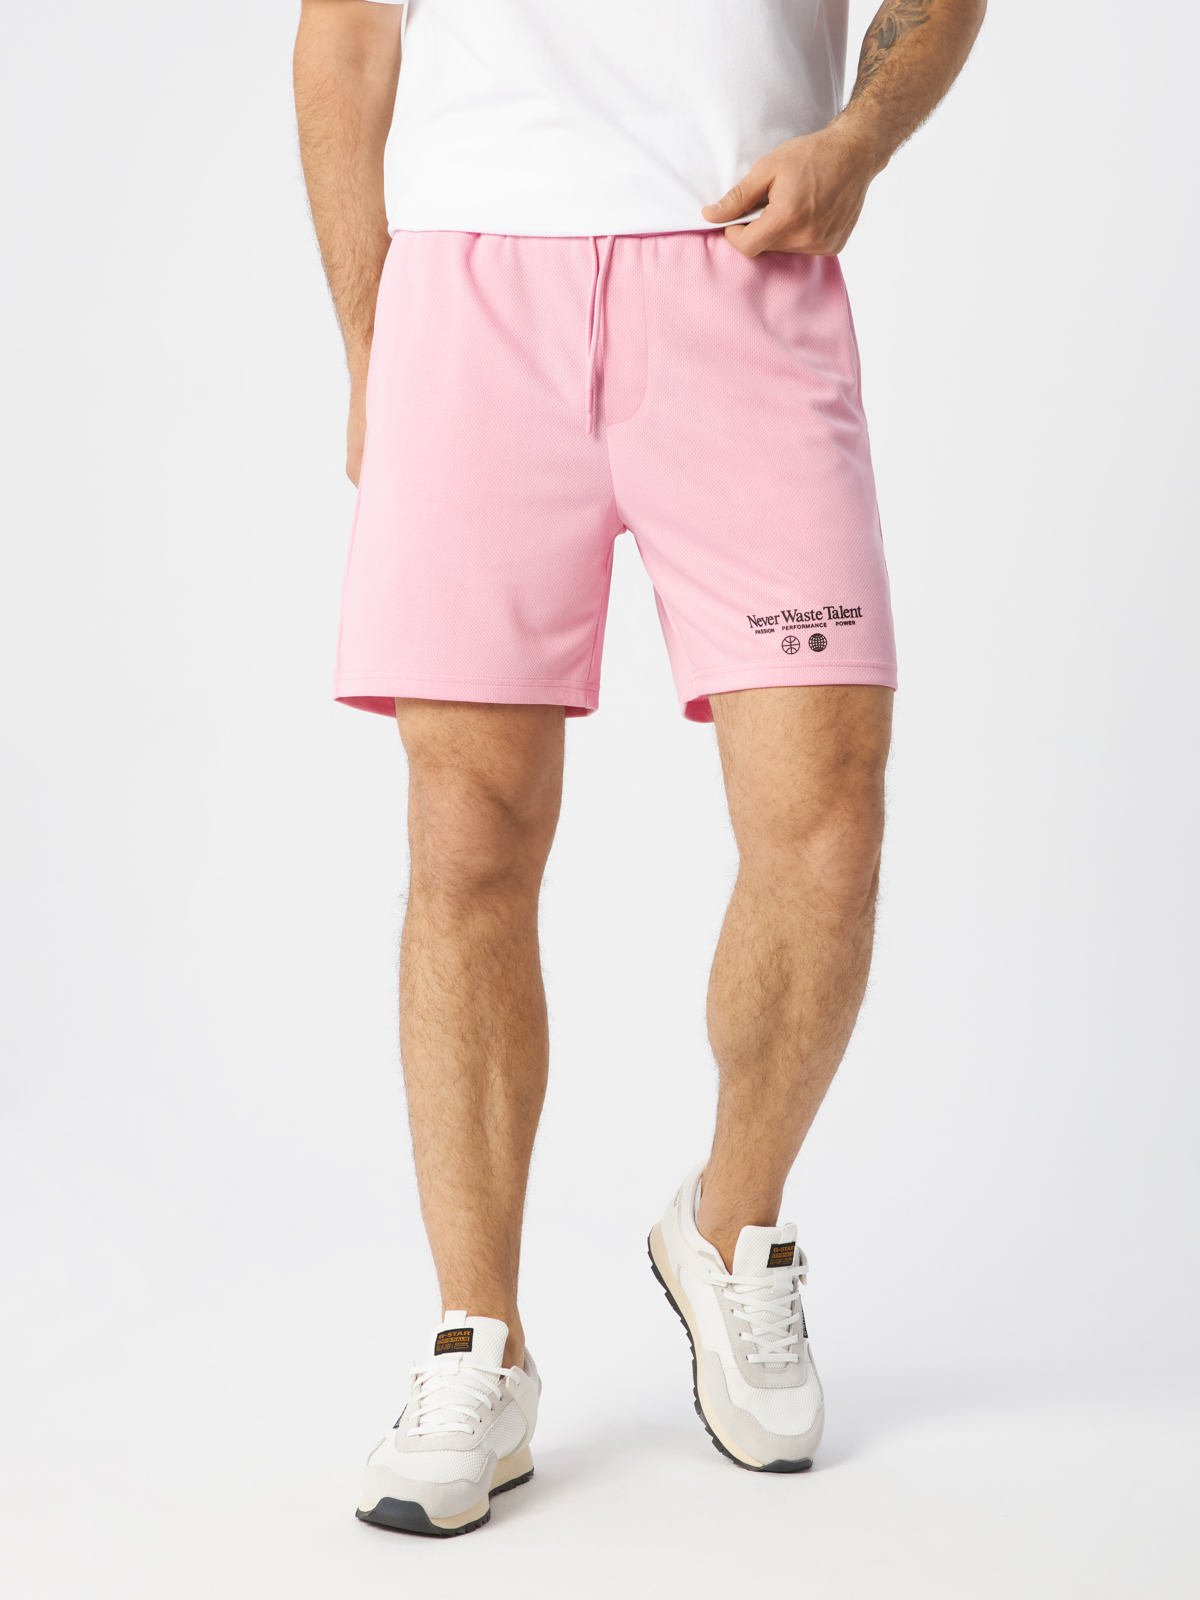 Повседневные шорты мужские H&M 1054578004 розовые L – купить в Москве, цены в интернет-магазинах на Мегамаркет